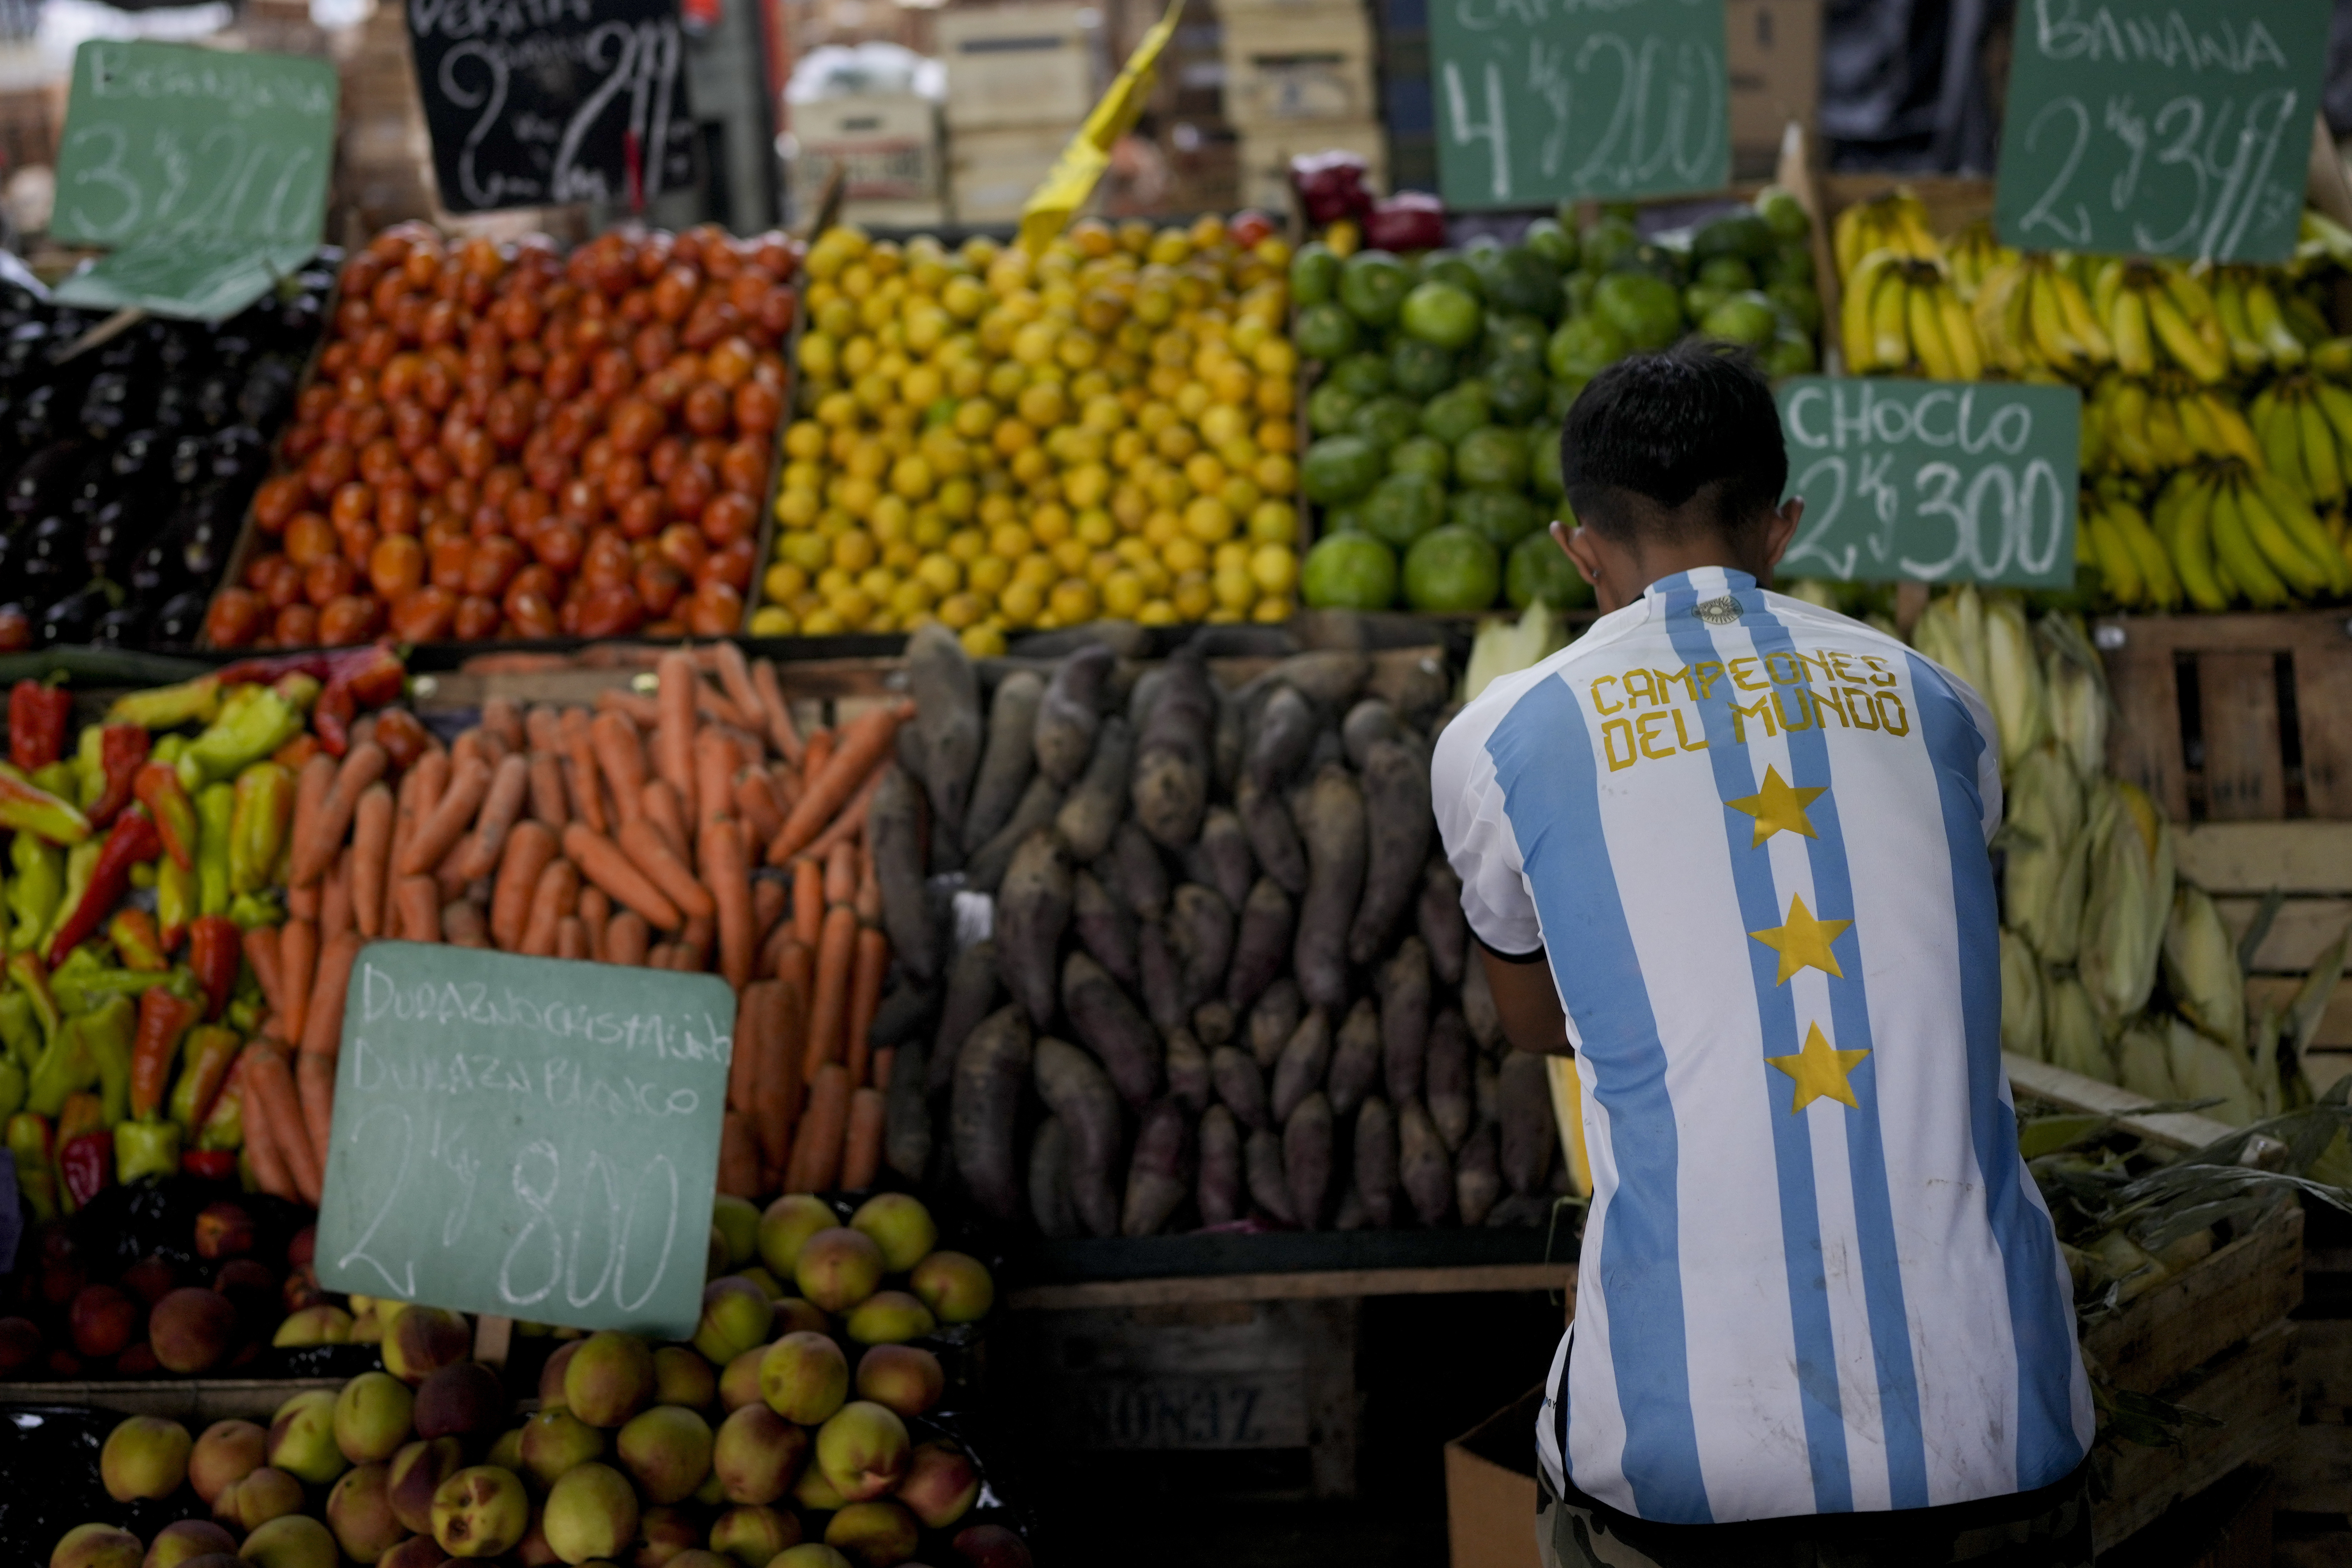 La Argentina ocupa el tercer puesto en el ranking de los países con mayor inflación de alimentos